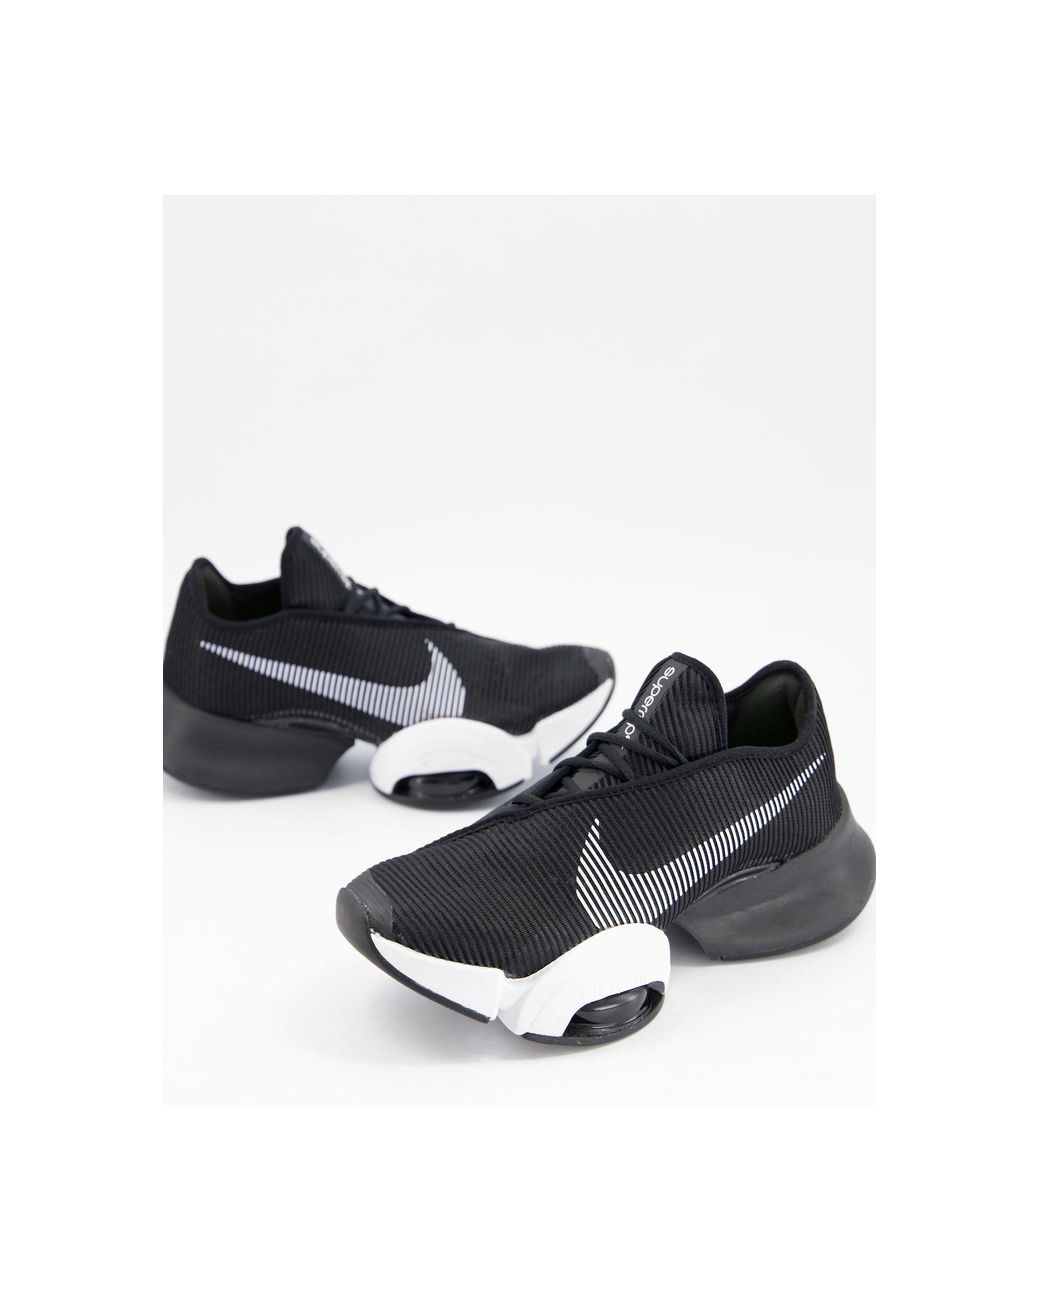 Nike Air Zoom Superrep 2 Trainers in Black | Lyst Australia